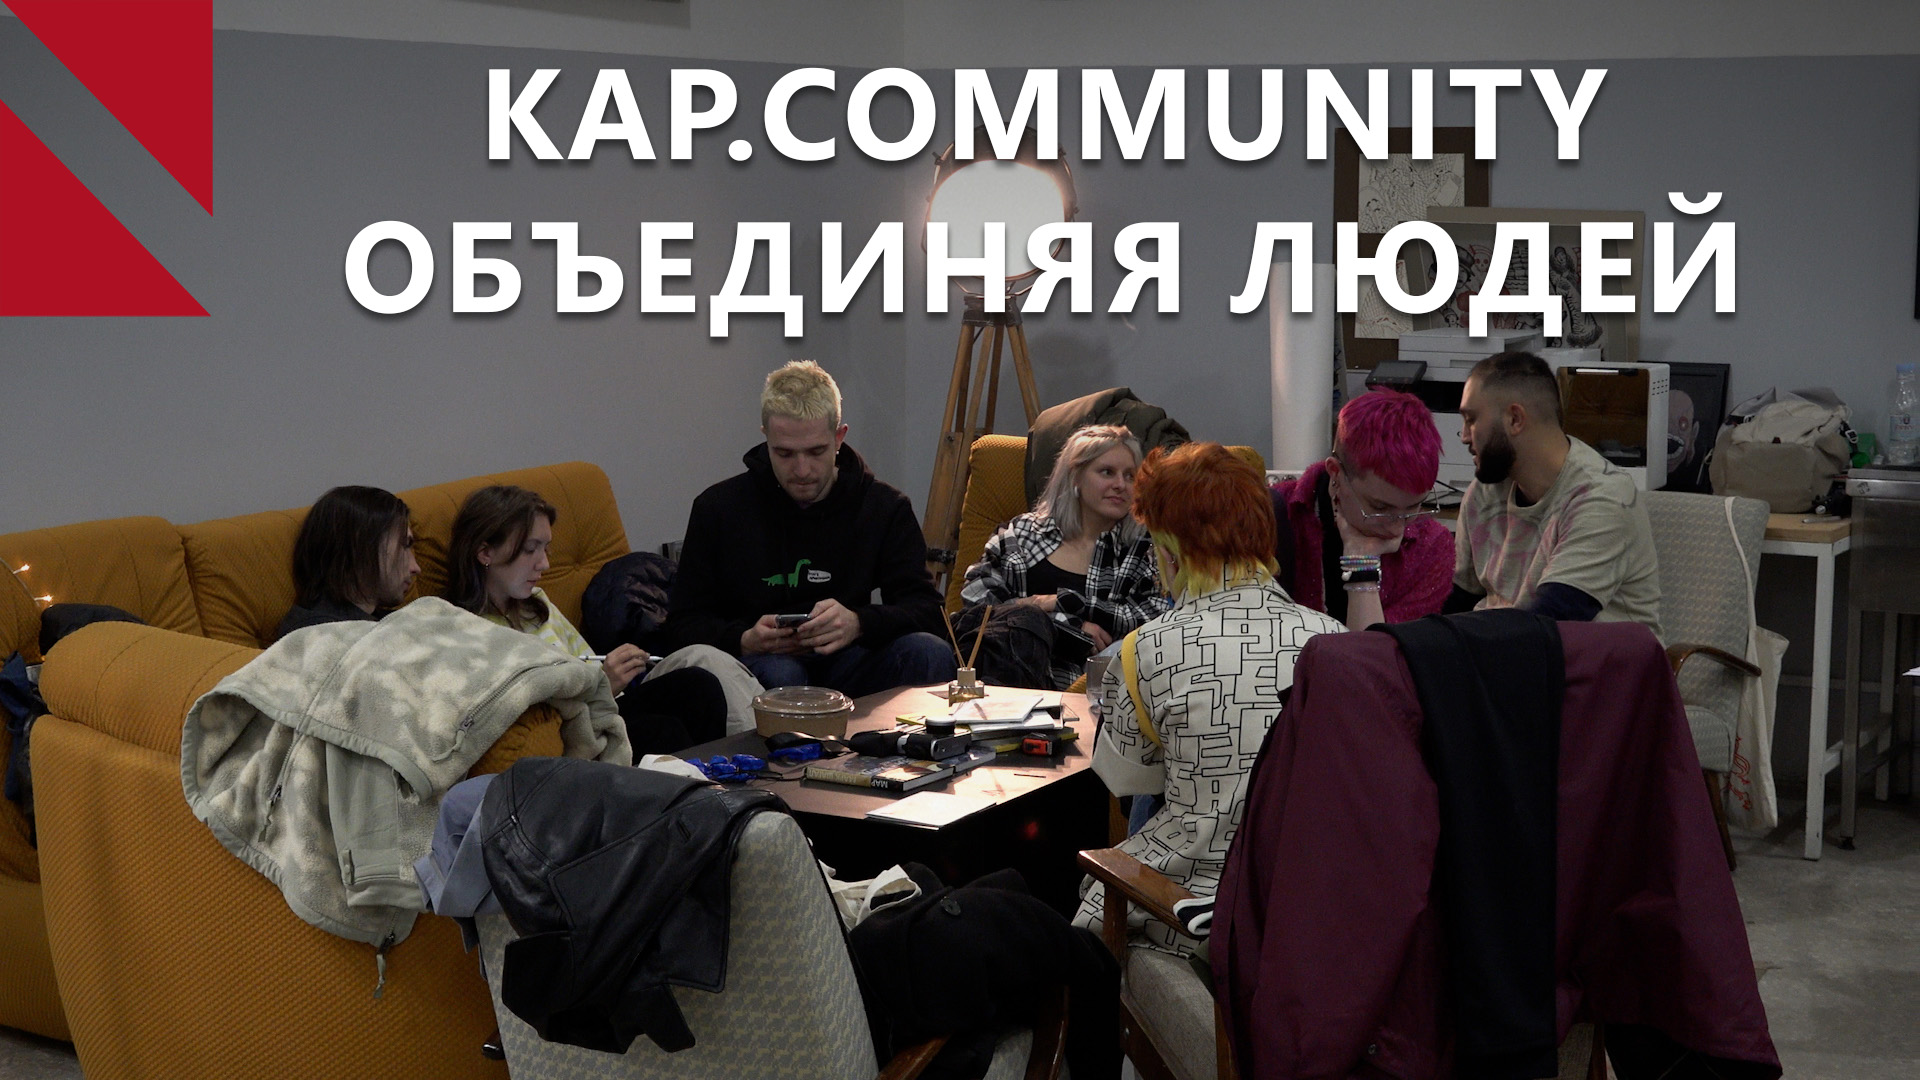 Что такое Kap.community и как оно проходит в Ереване?